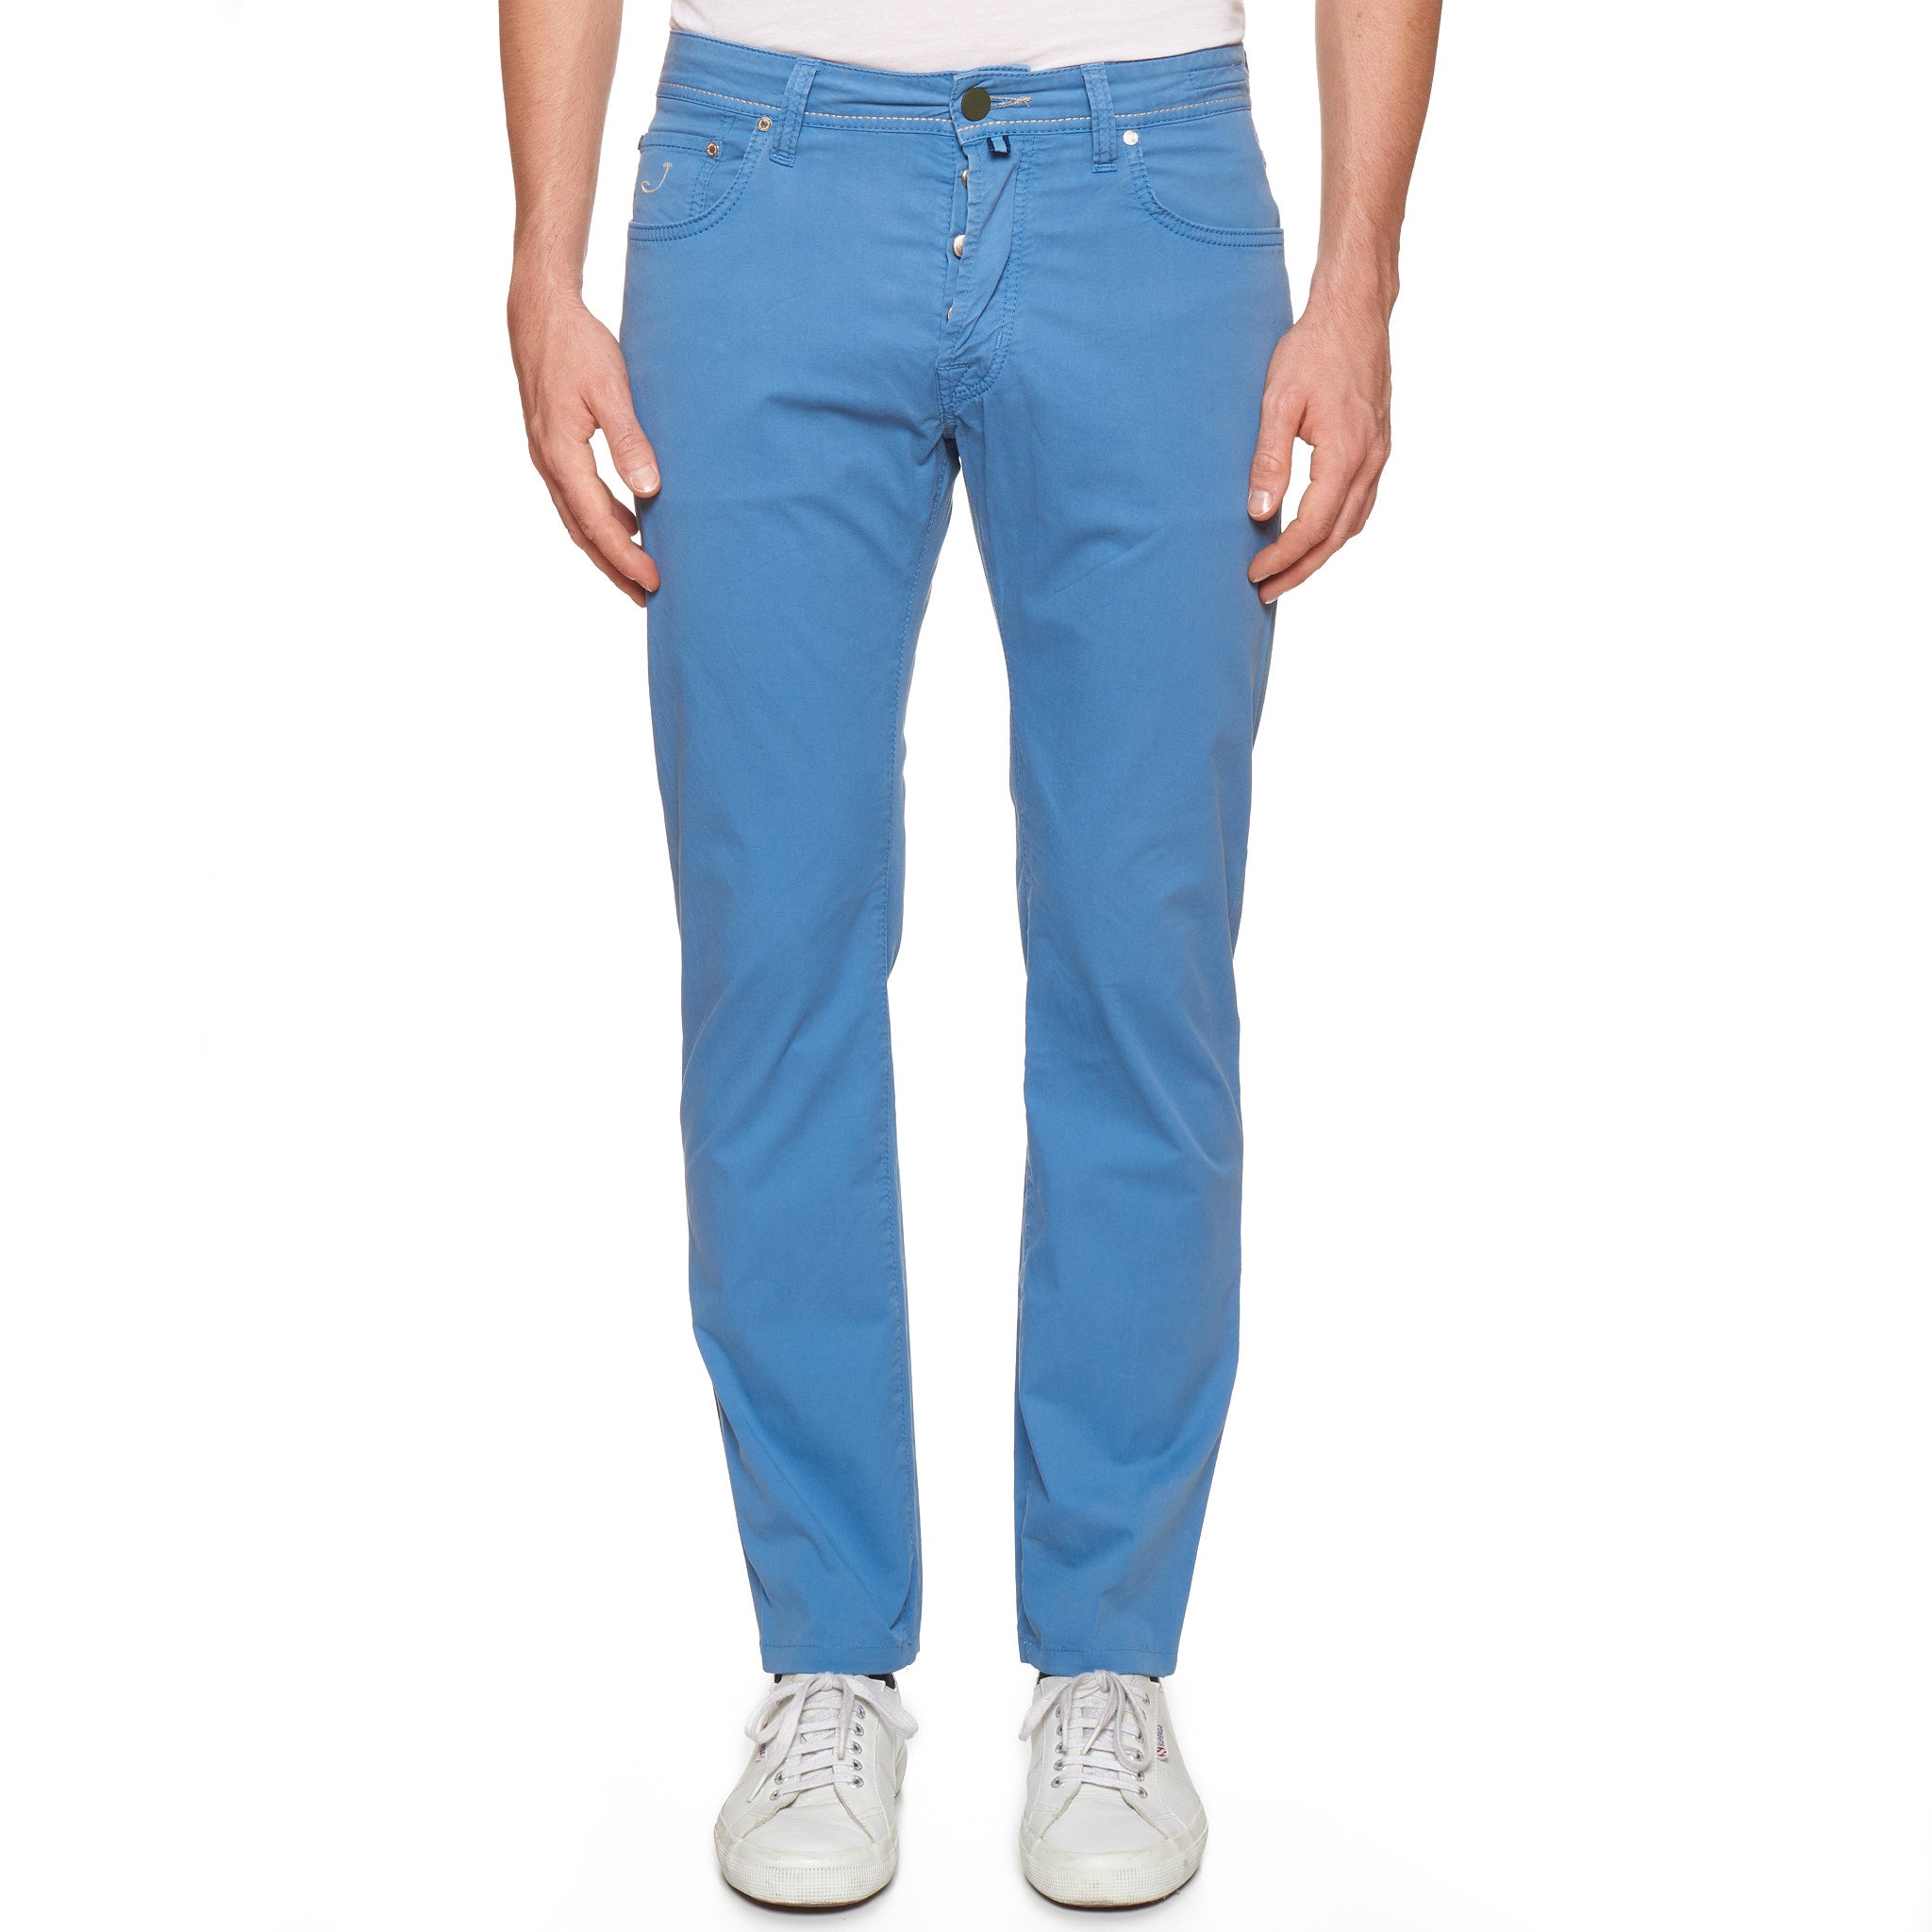 JACOB COHEN PW688 Comfort Blue Cotton Stretch Slim Fit Jeans Pants Siz